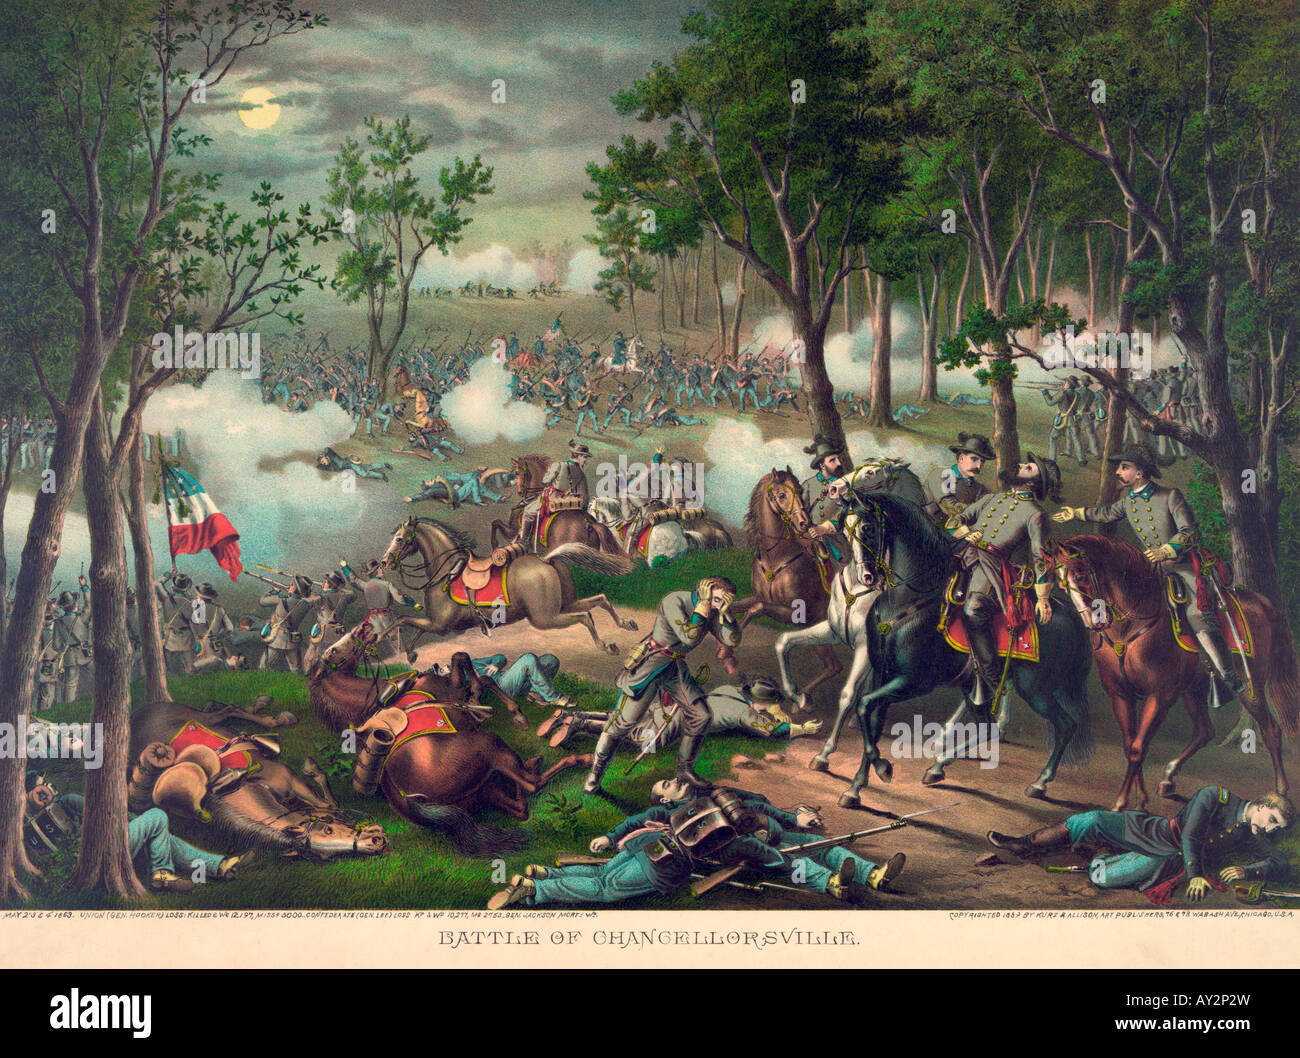 Schlacht von Chancellorsville Malerei - US Bürgerkrieg Schlacht bei dem General Stonewall Jackson getötet wurde Stockfoto